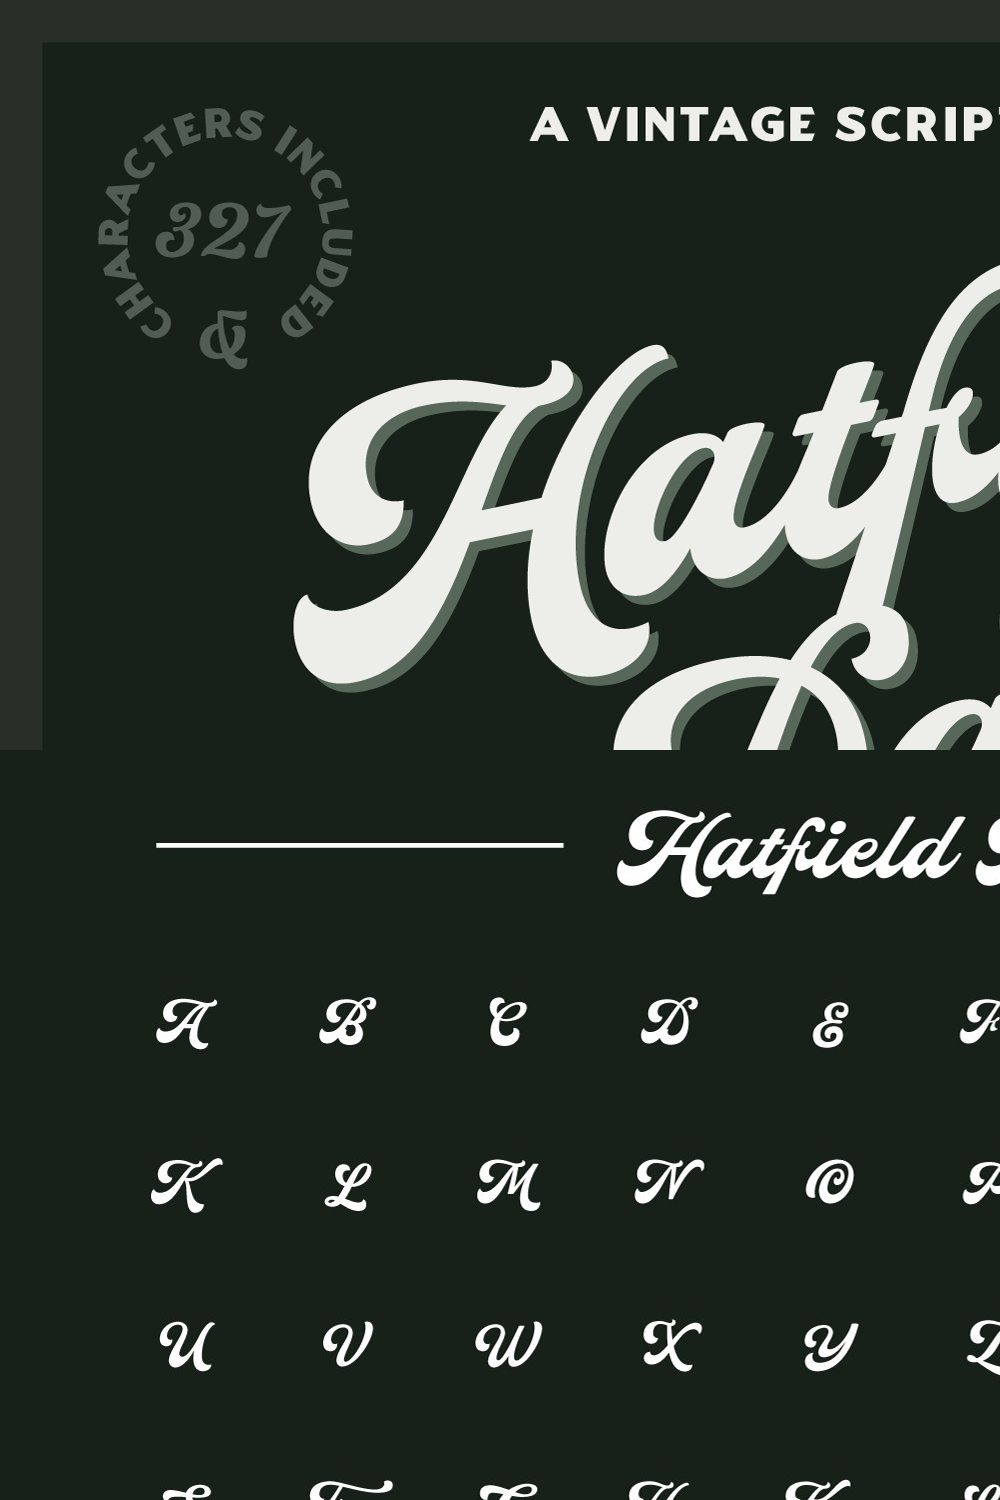 Hatfield Park - Vintage Script Font pinterest preview image.